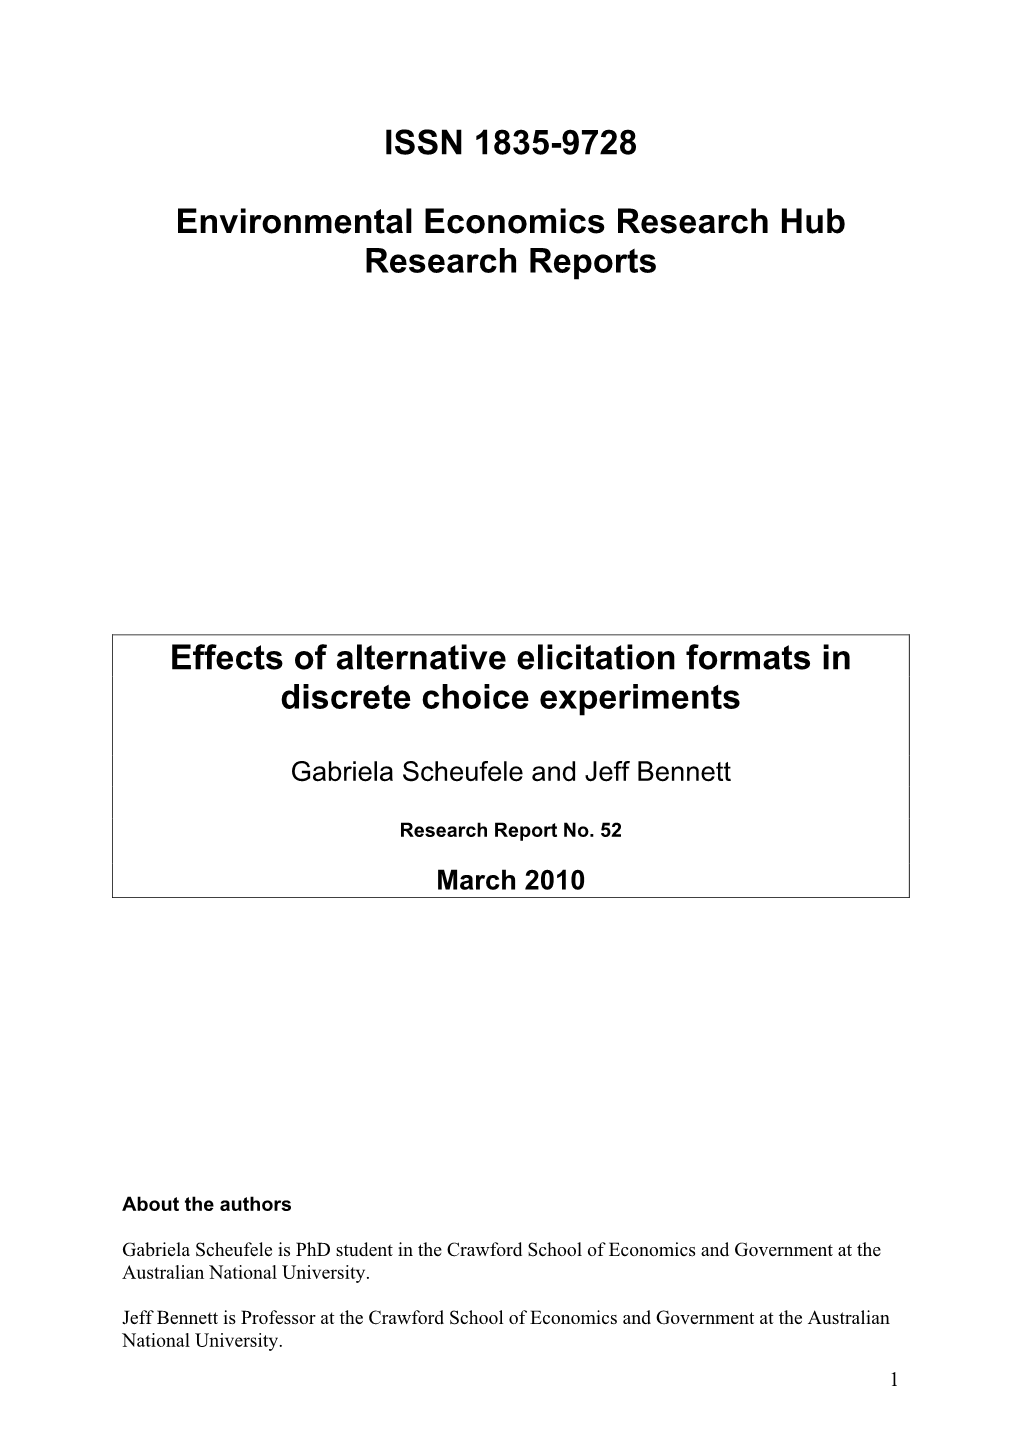 EERH Research Report 1